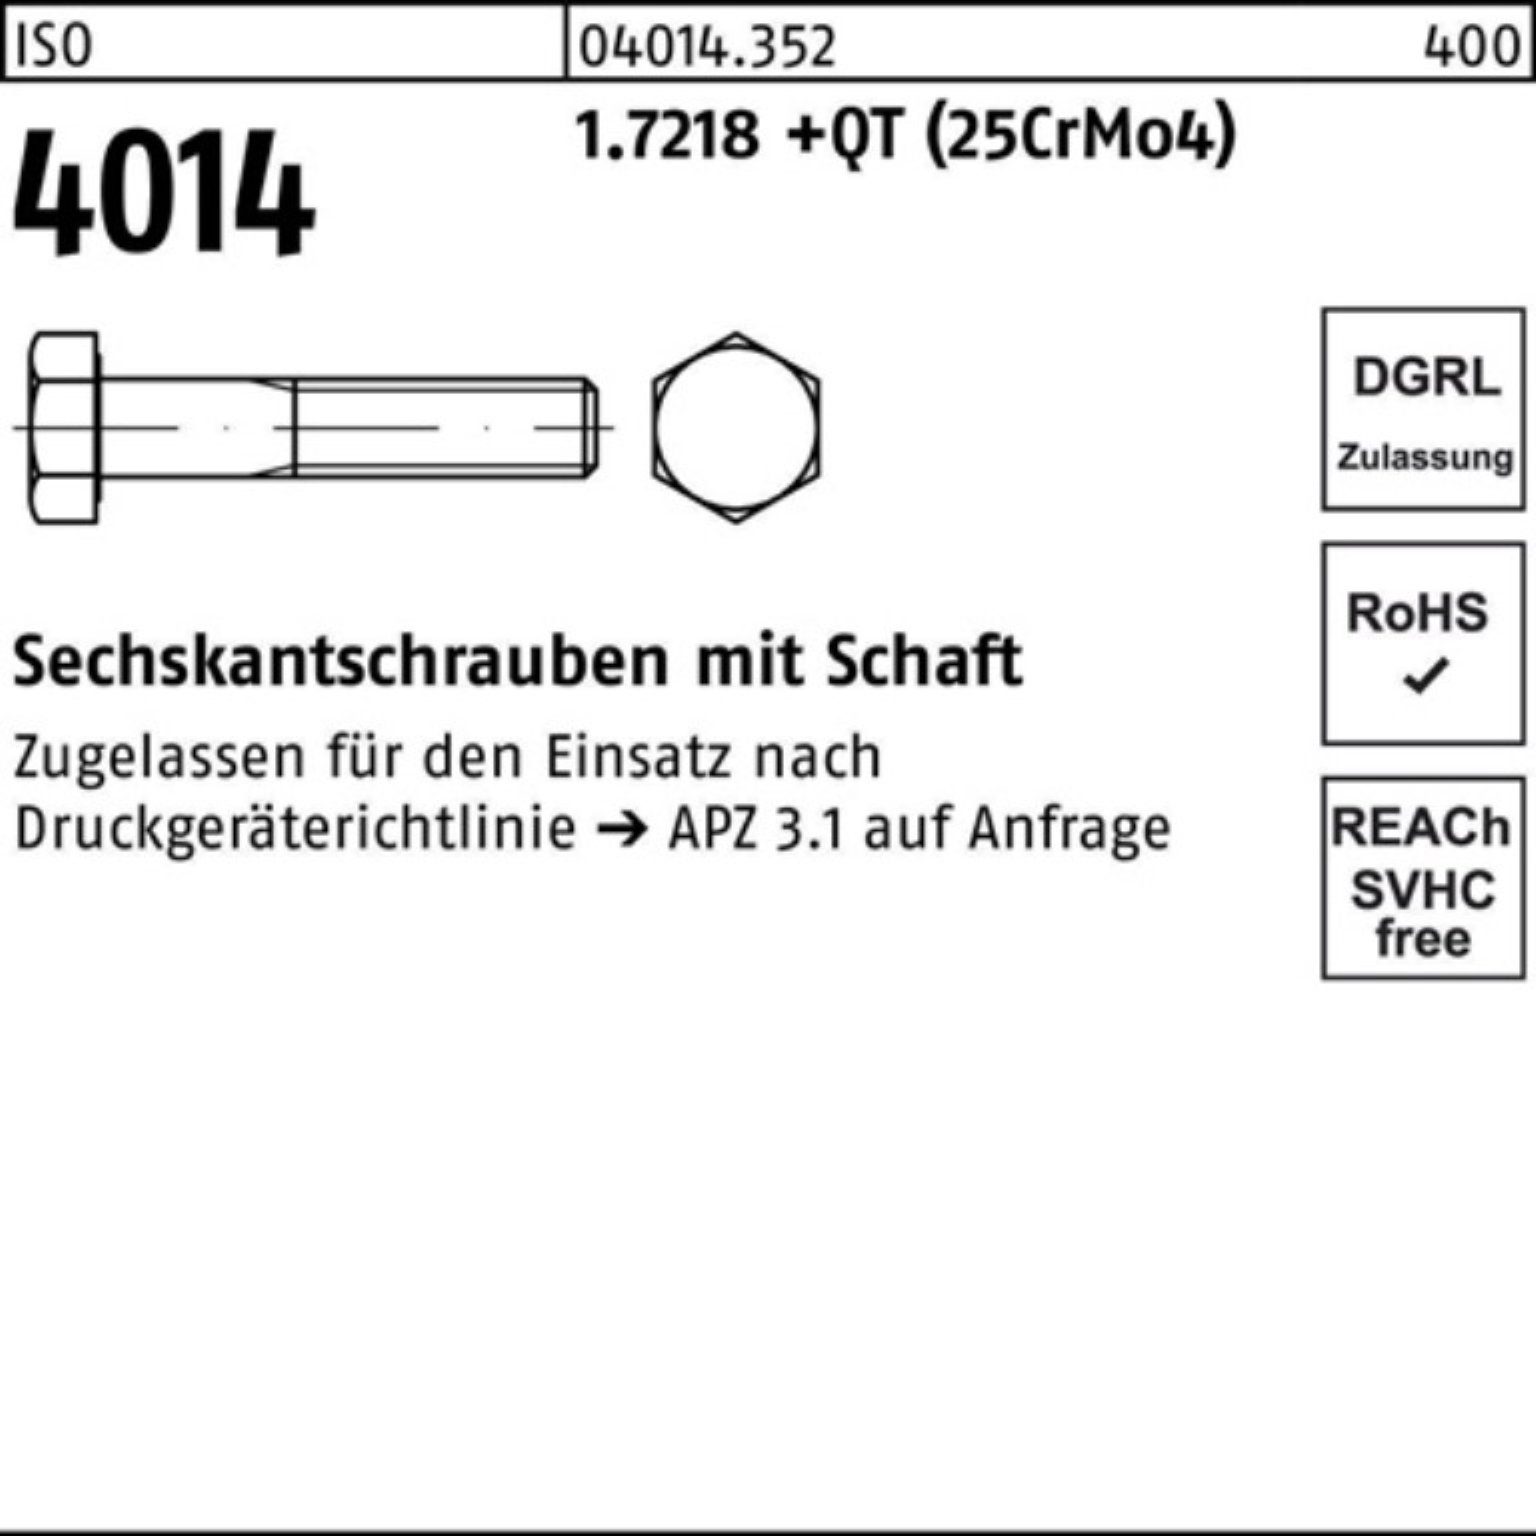 Bufab Sechskantschraube 100er Pack Schaft M24x ISO Sechskantschraube 4014 1.7218 +QT (25Cr 140